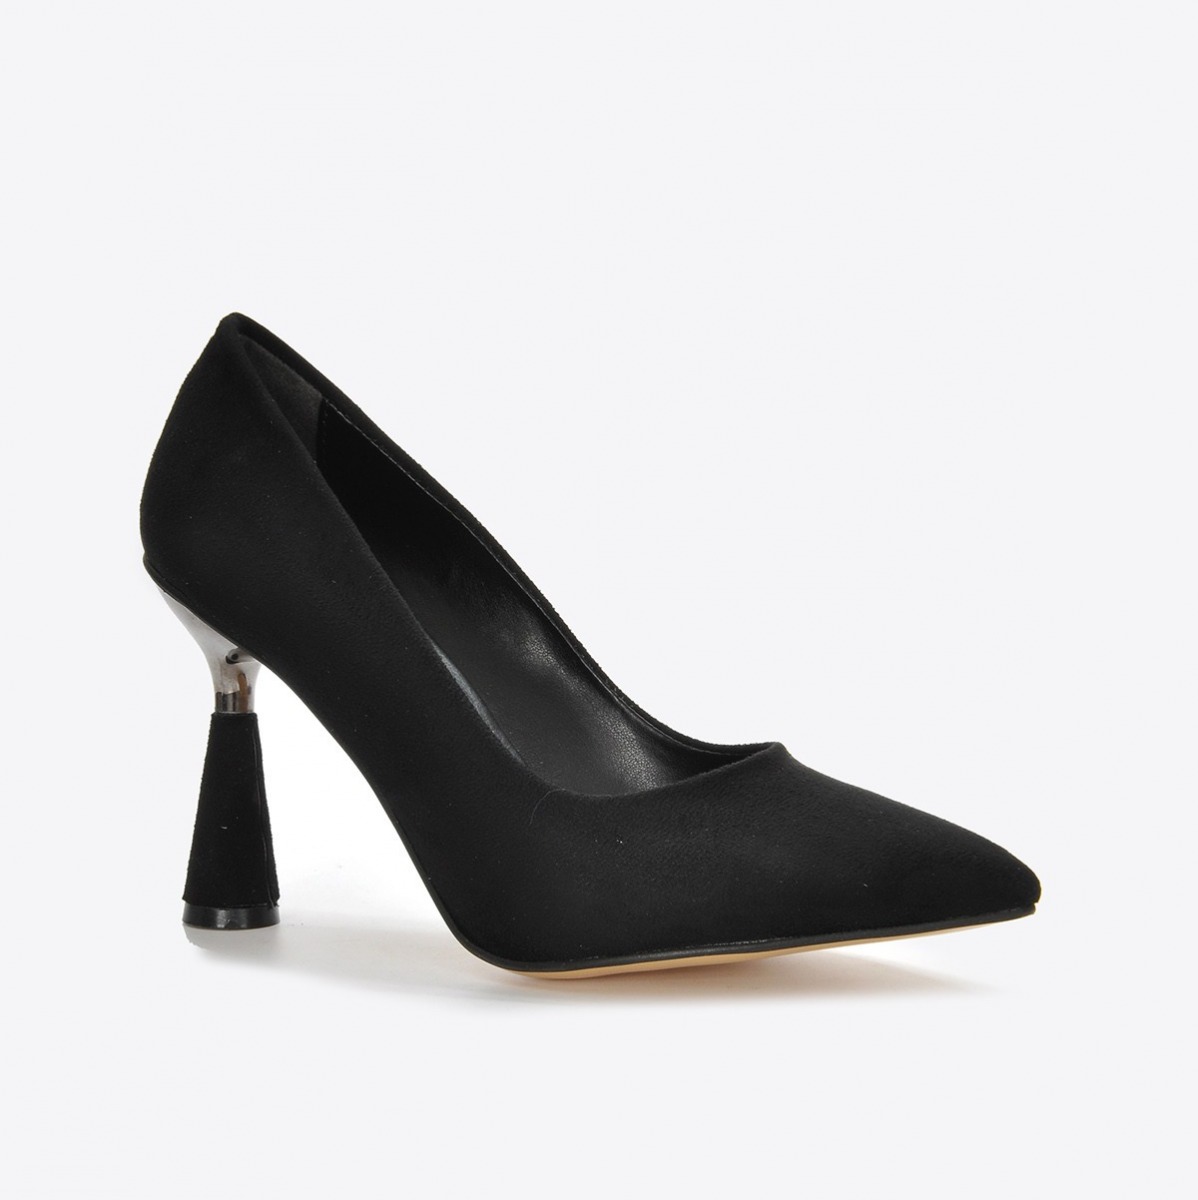 Flo Kadın Siyah Süet Klasik Topuklu Ayakkabı VZN21-037Y. 3